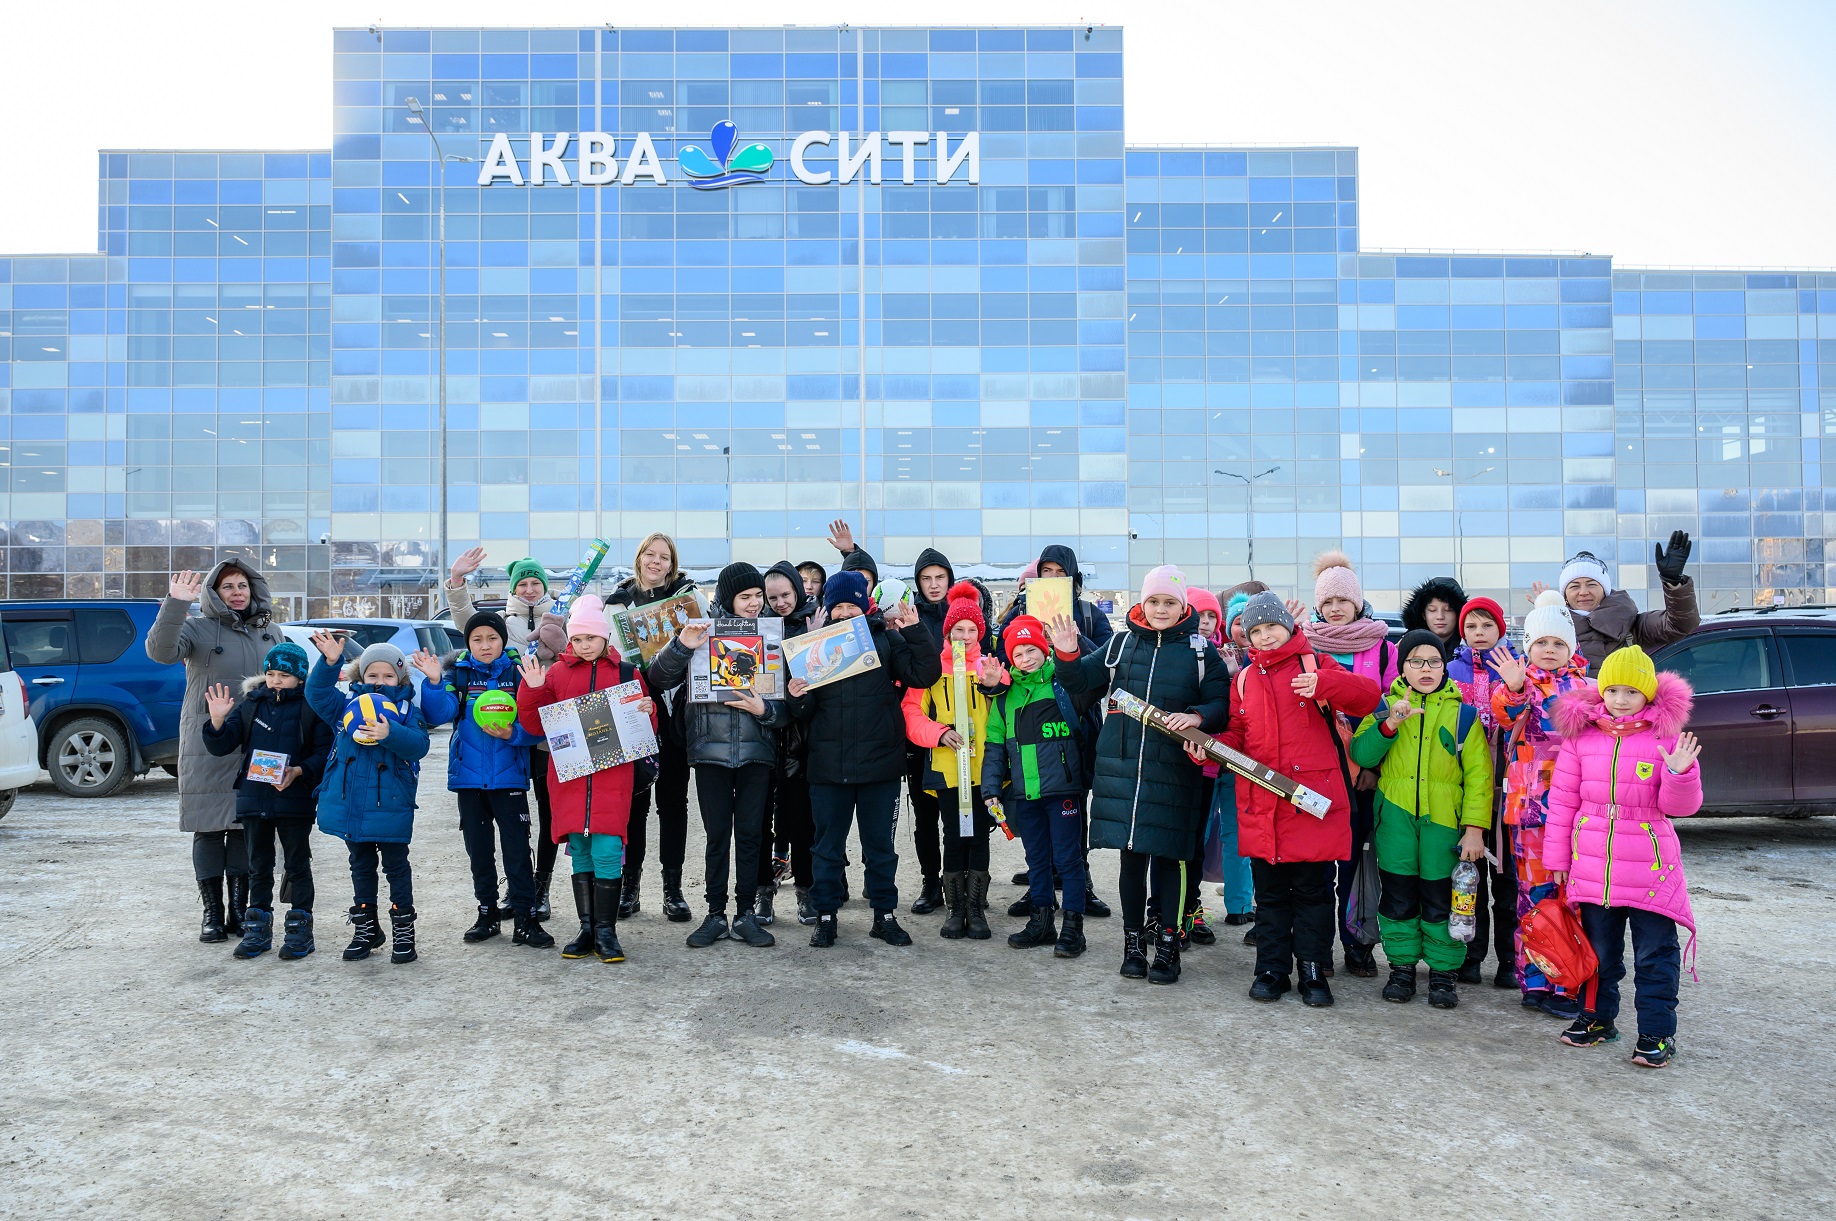 Сахалинские компании объединились, чтобы подарить новогодний праздник для тех, кто в этом нуждается